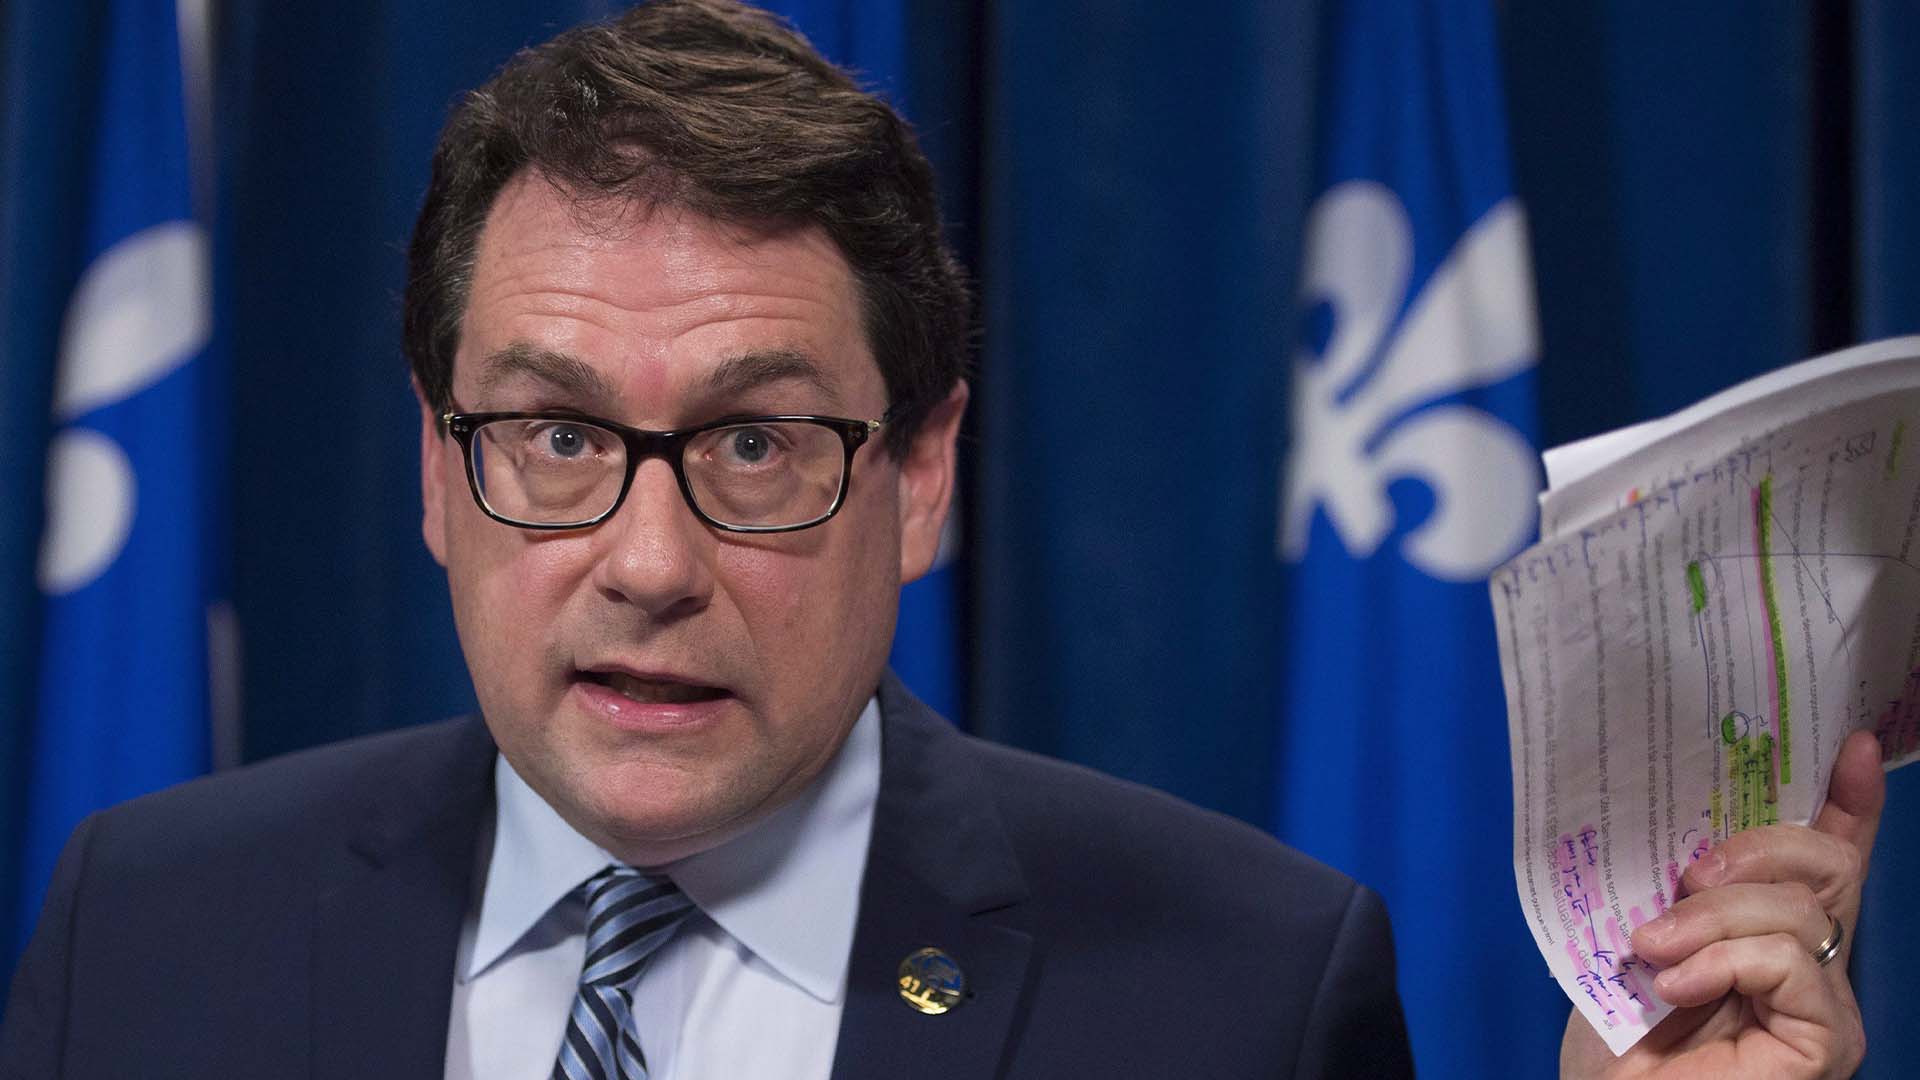 Bernard Drainville alors qu'il était député du Parti Québécois, le vendredi 1er avril 2016 à l'Assemblée législative de Québec.